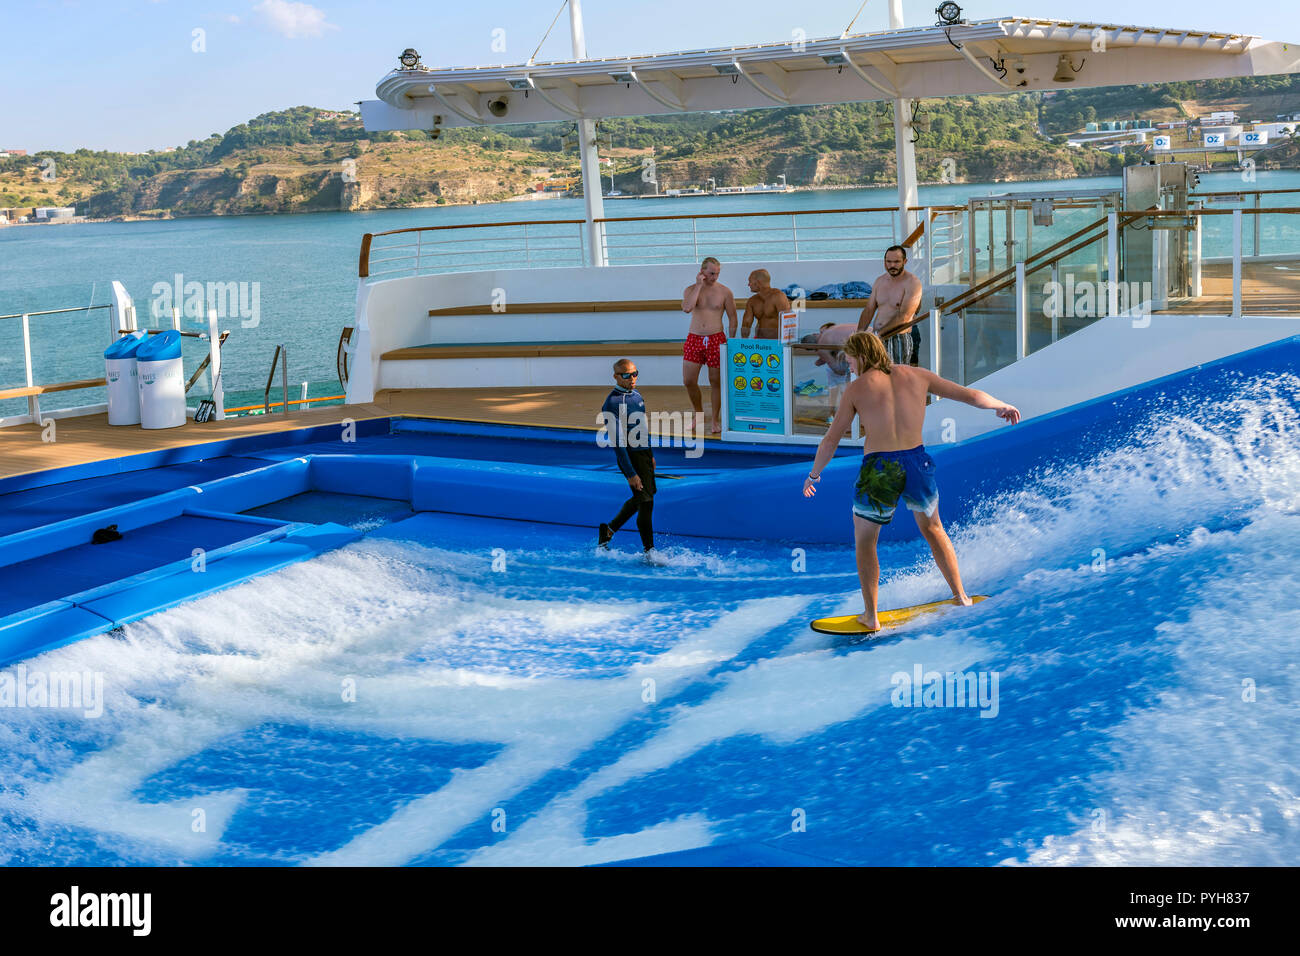 Jeune homme surf flux / flowriding à bord de l'indépendance de la seas cruise ship Banque D'Images